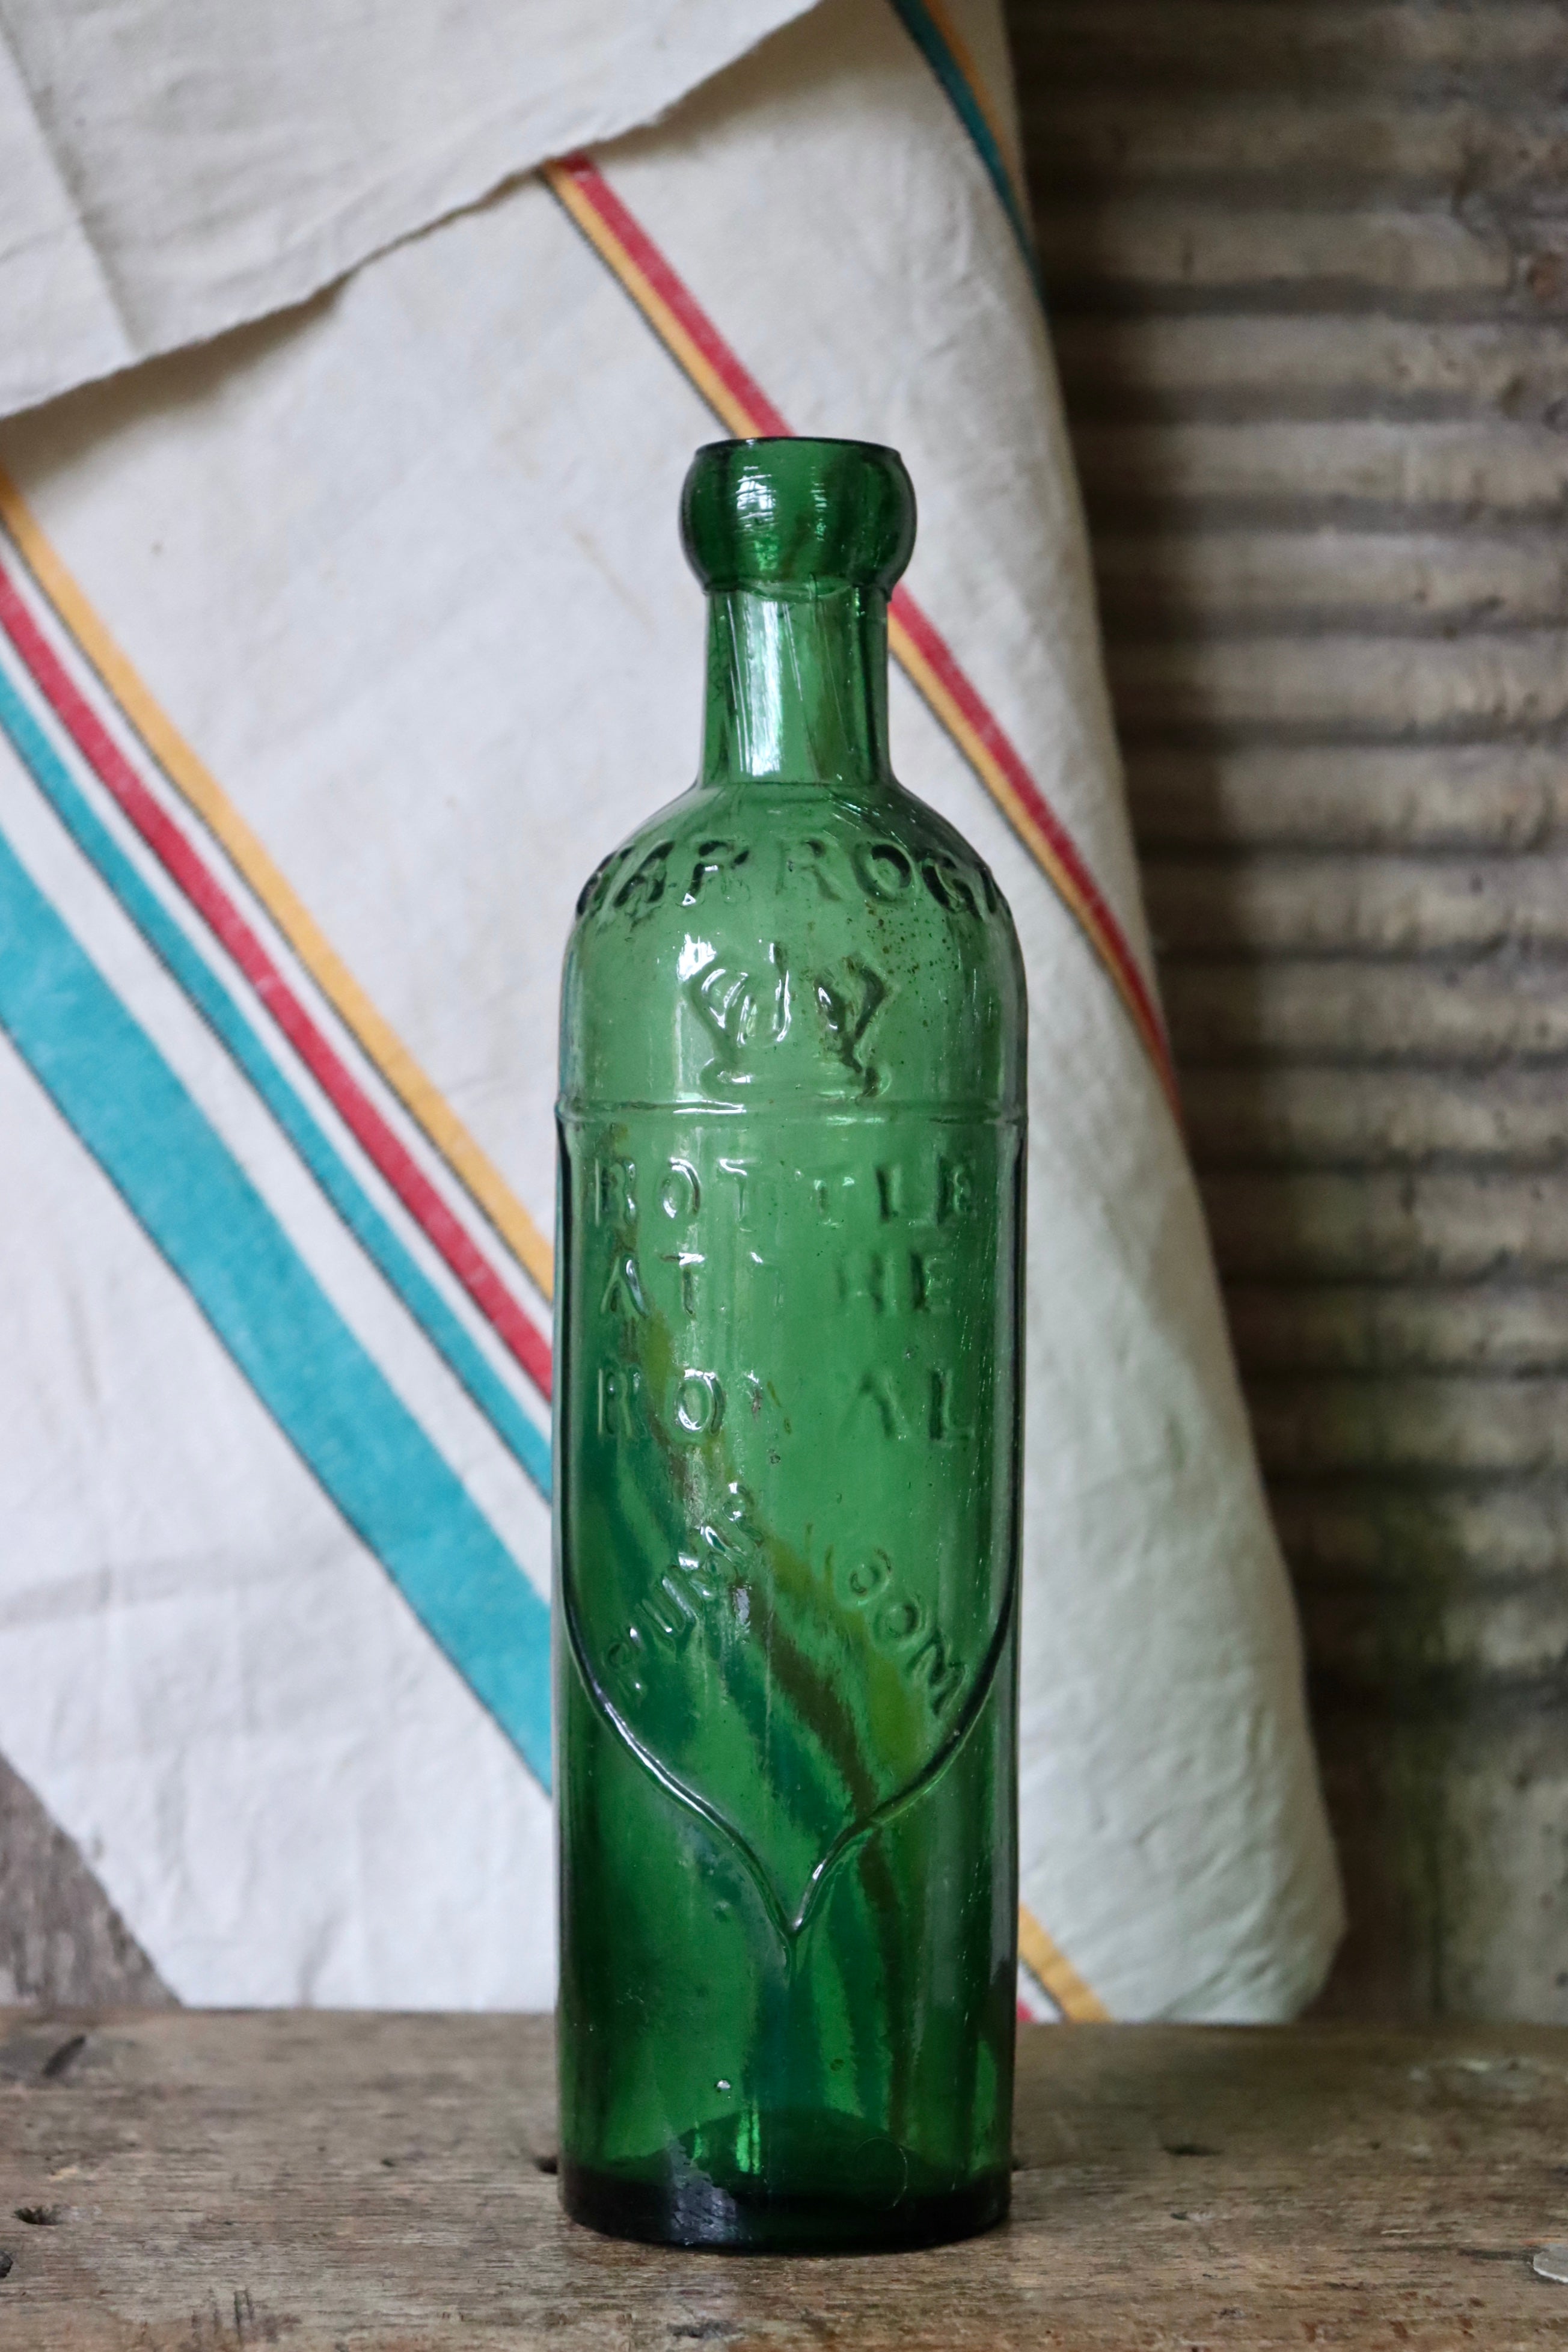 Rare Antique Emerald Green Harrogate Wells Royal Pump Bottle